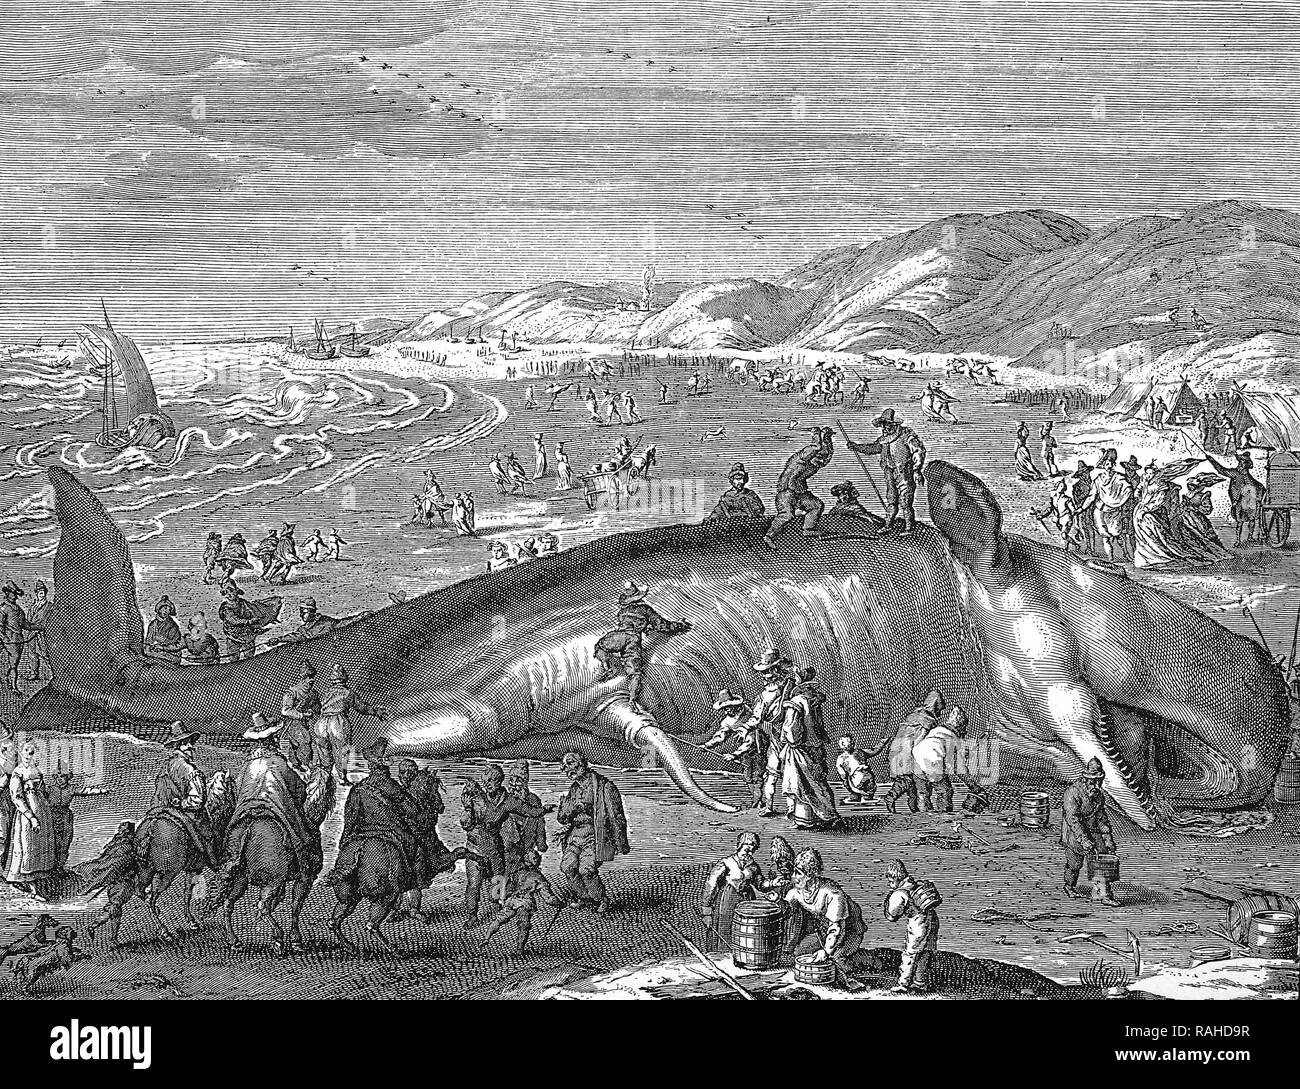 Foglio illustrativo olandese, immagine di una balena spiaggiata, 1598 Foto Stock